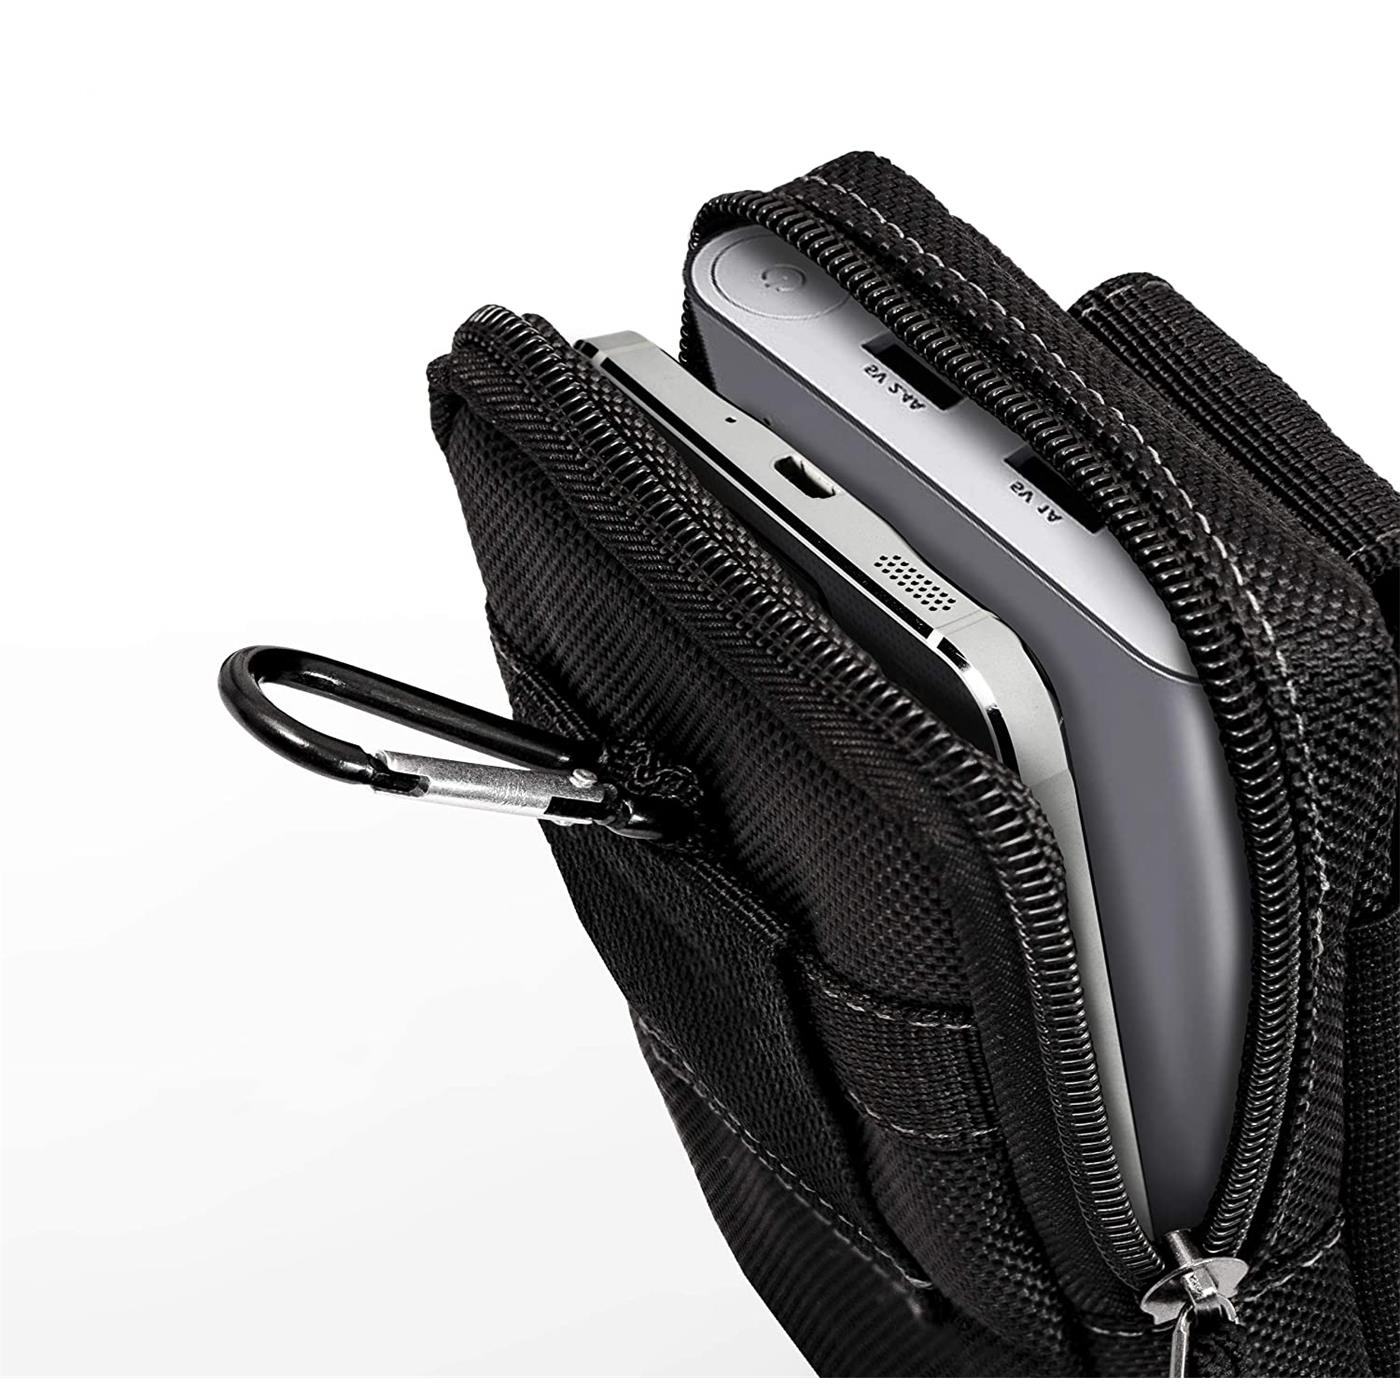 Indexbild 4 - Gürtel Tasche Für Xiaomi Modelle Handy Hülle Schutzhülle Case Clip Etui Nylon